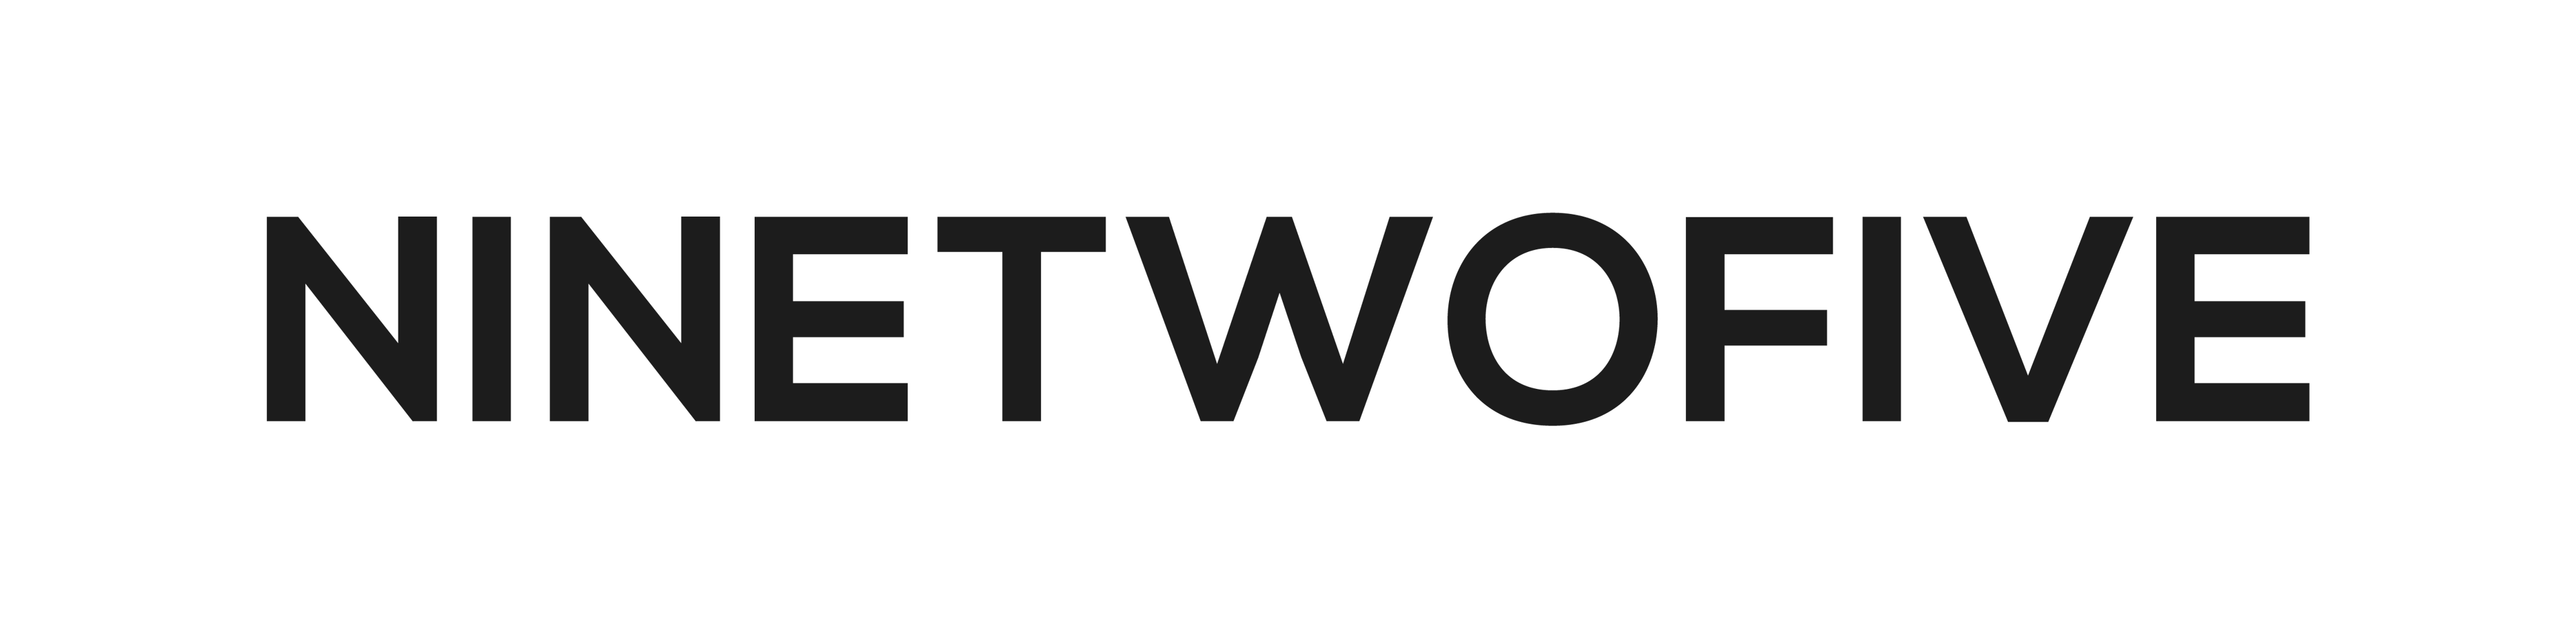 NINETWOFIVE logo